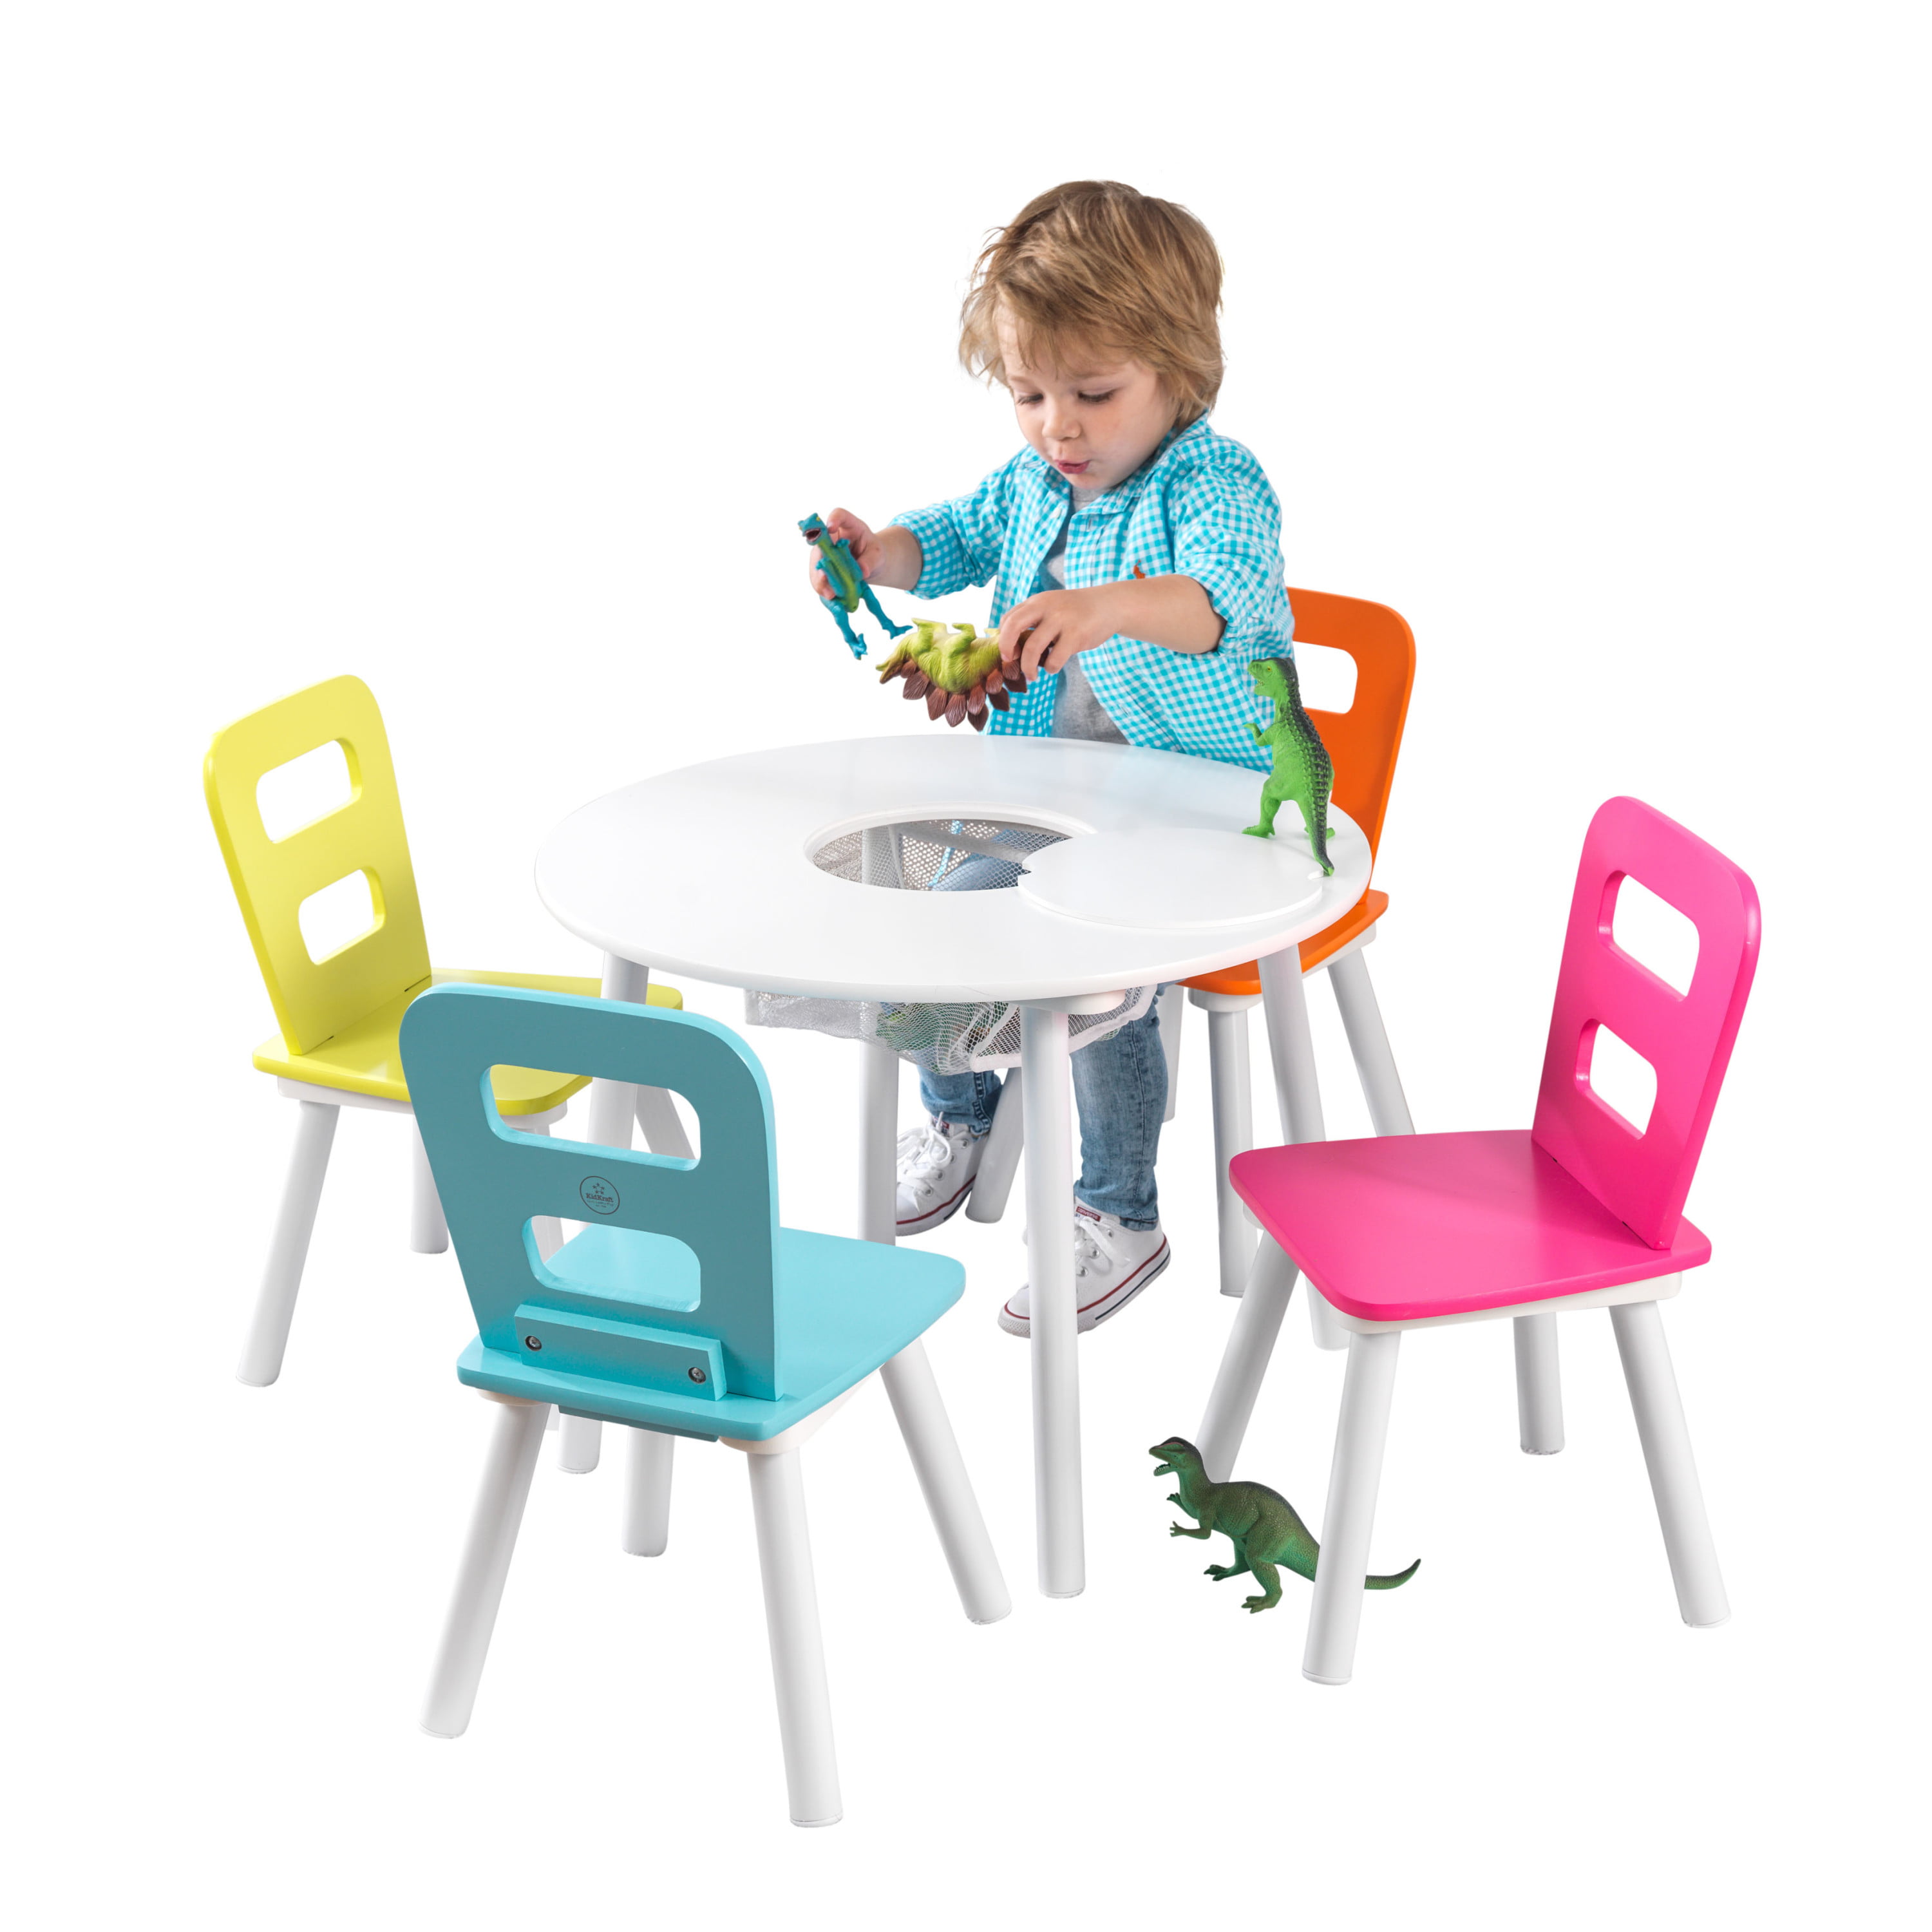 Kidkraft kidkraft wooden toddler Children’s table Baby 